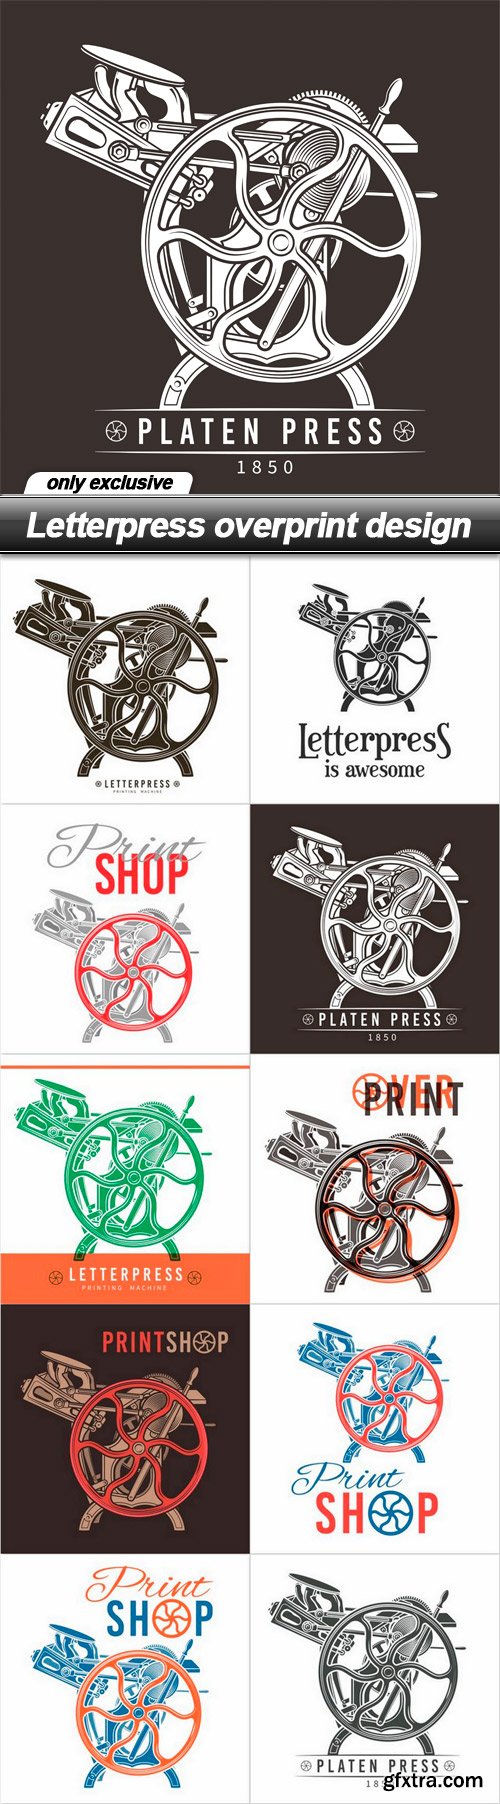 Letterpress overprint design - 10 EPS